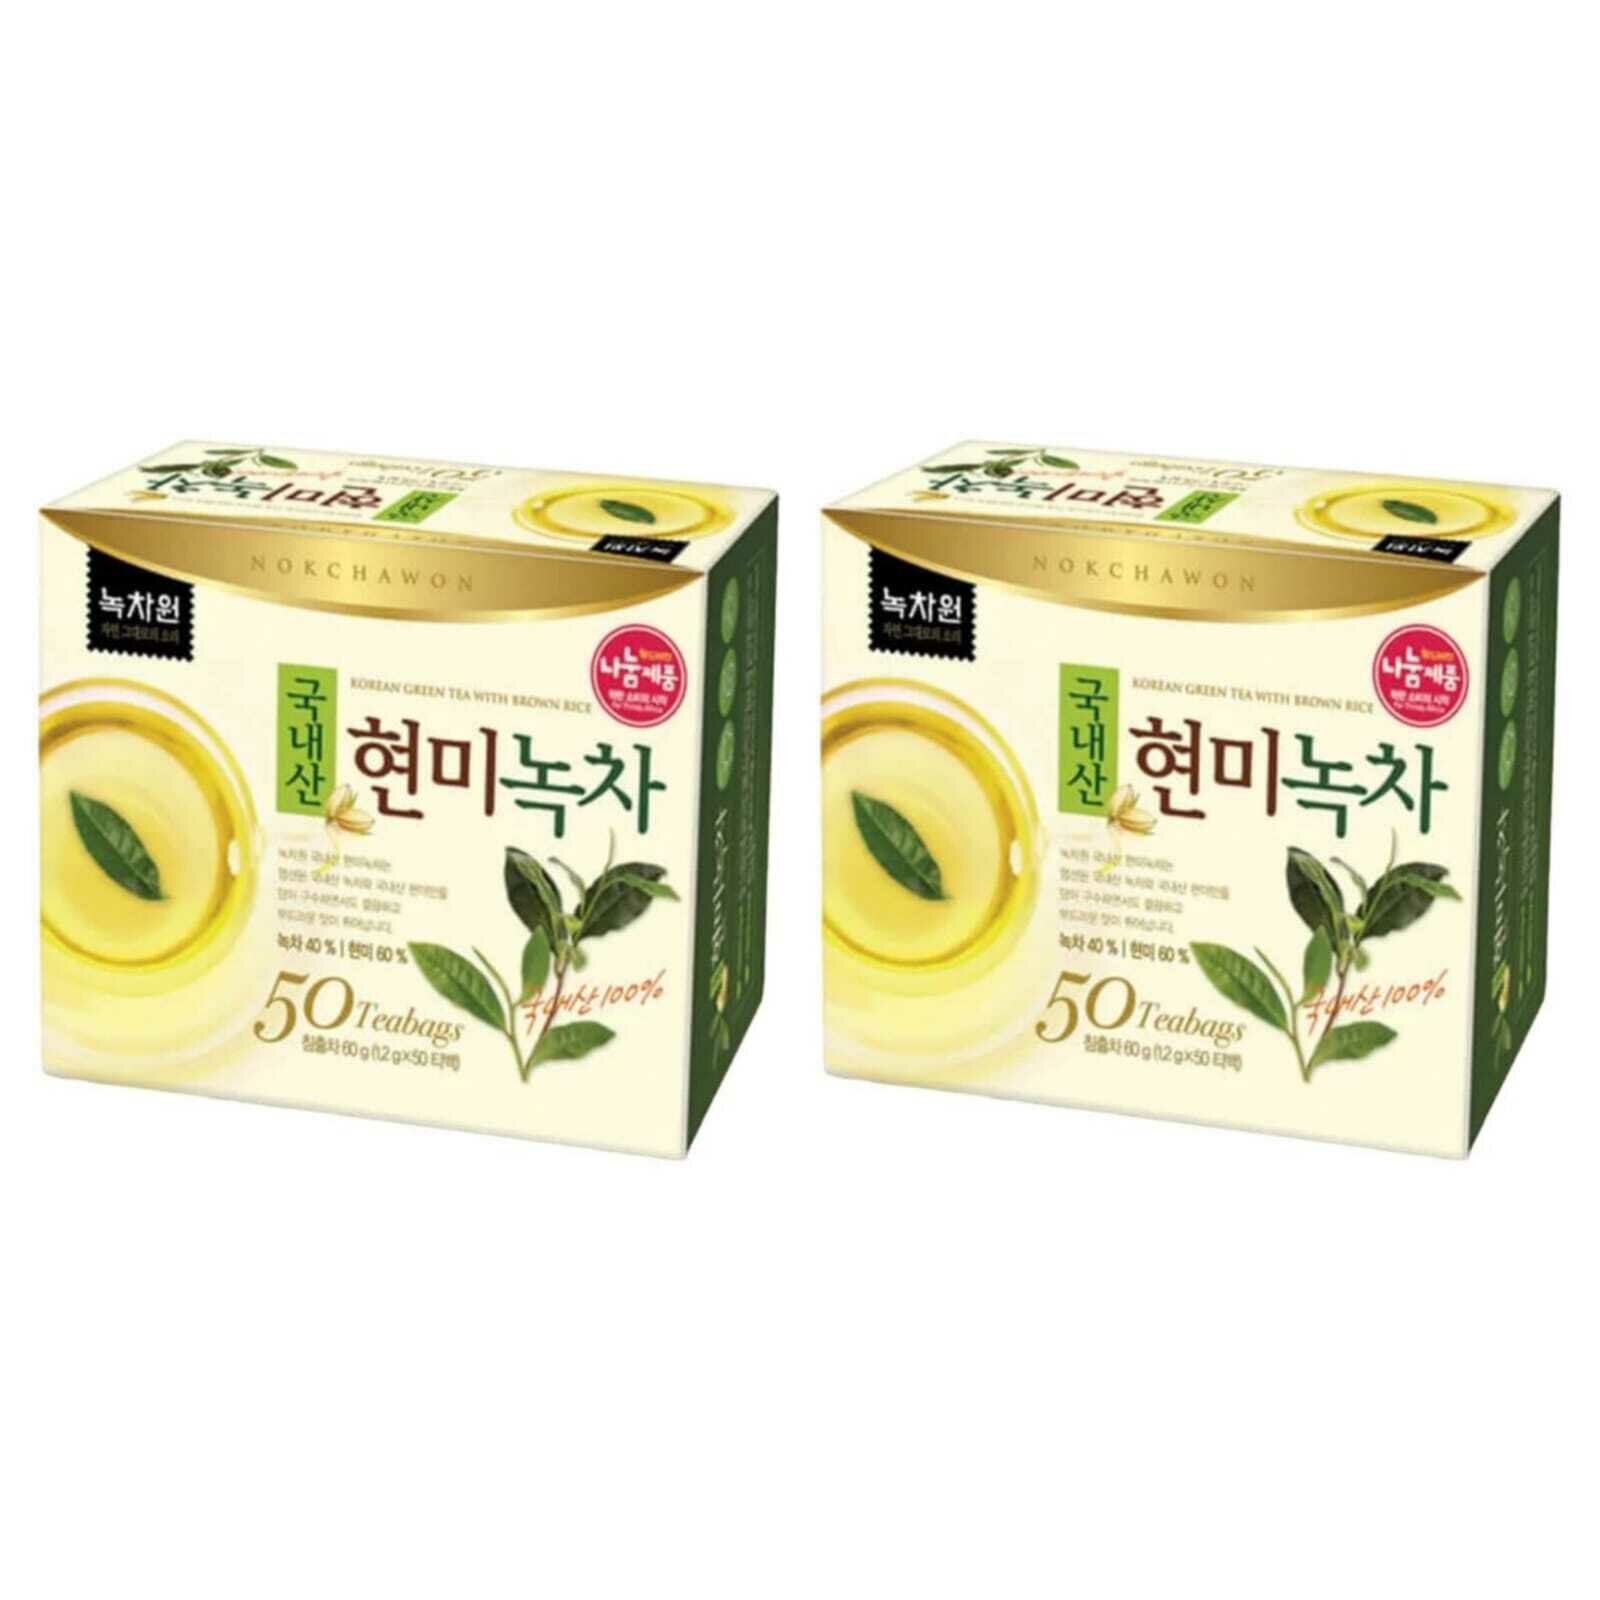 Чай зеленый с коричневым рисом Генмайча в пакетиках Nokchawon 50 пак, 2 шт